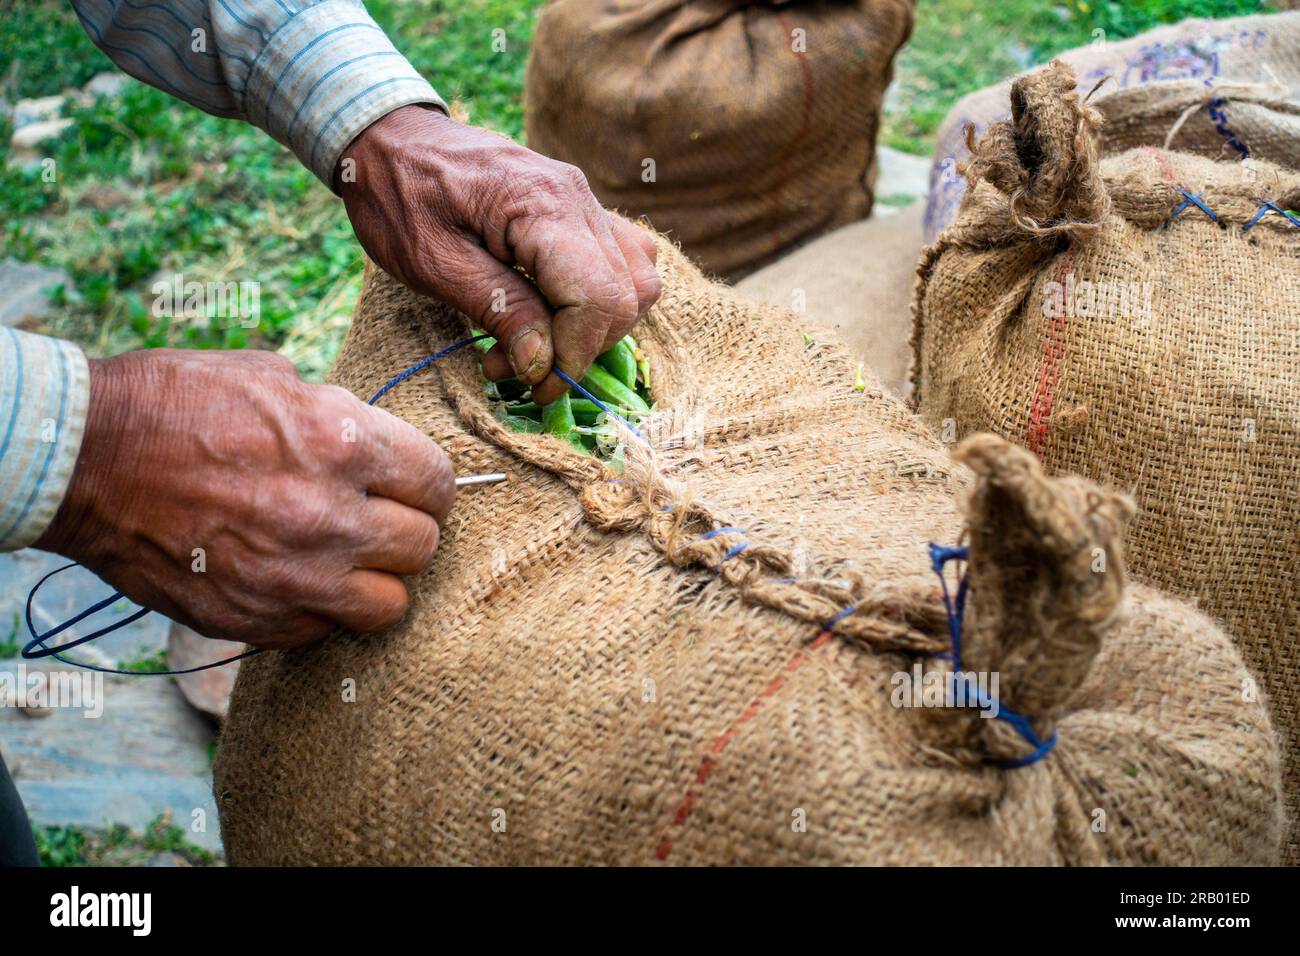 Die Hände nähen verpackte Beutel mit frisch geernteten grünen Erbsen aus biologischem Anbau, die zum Gemüsemarkt transportiert werden. Uttarakhand Indien. Stockfoto